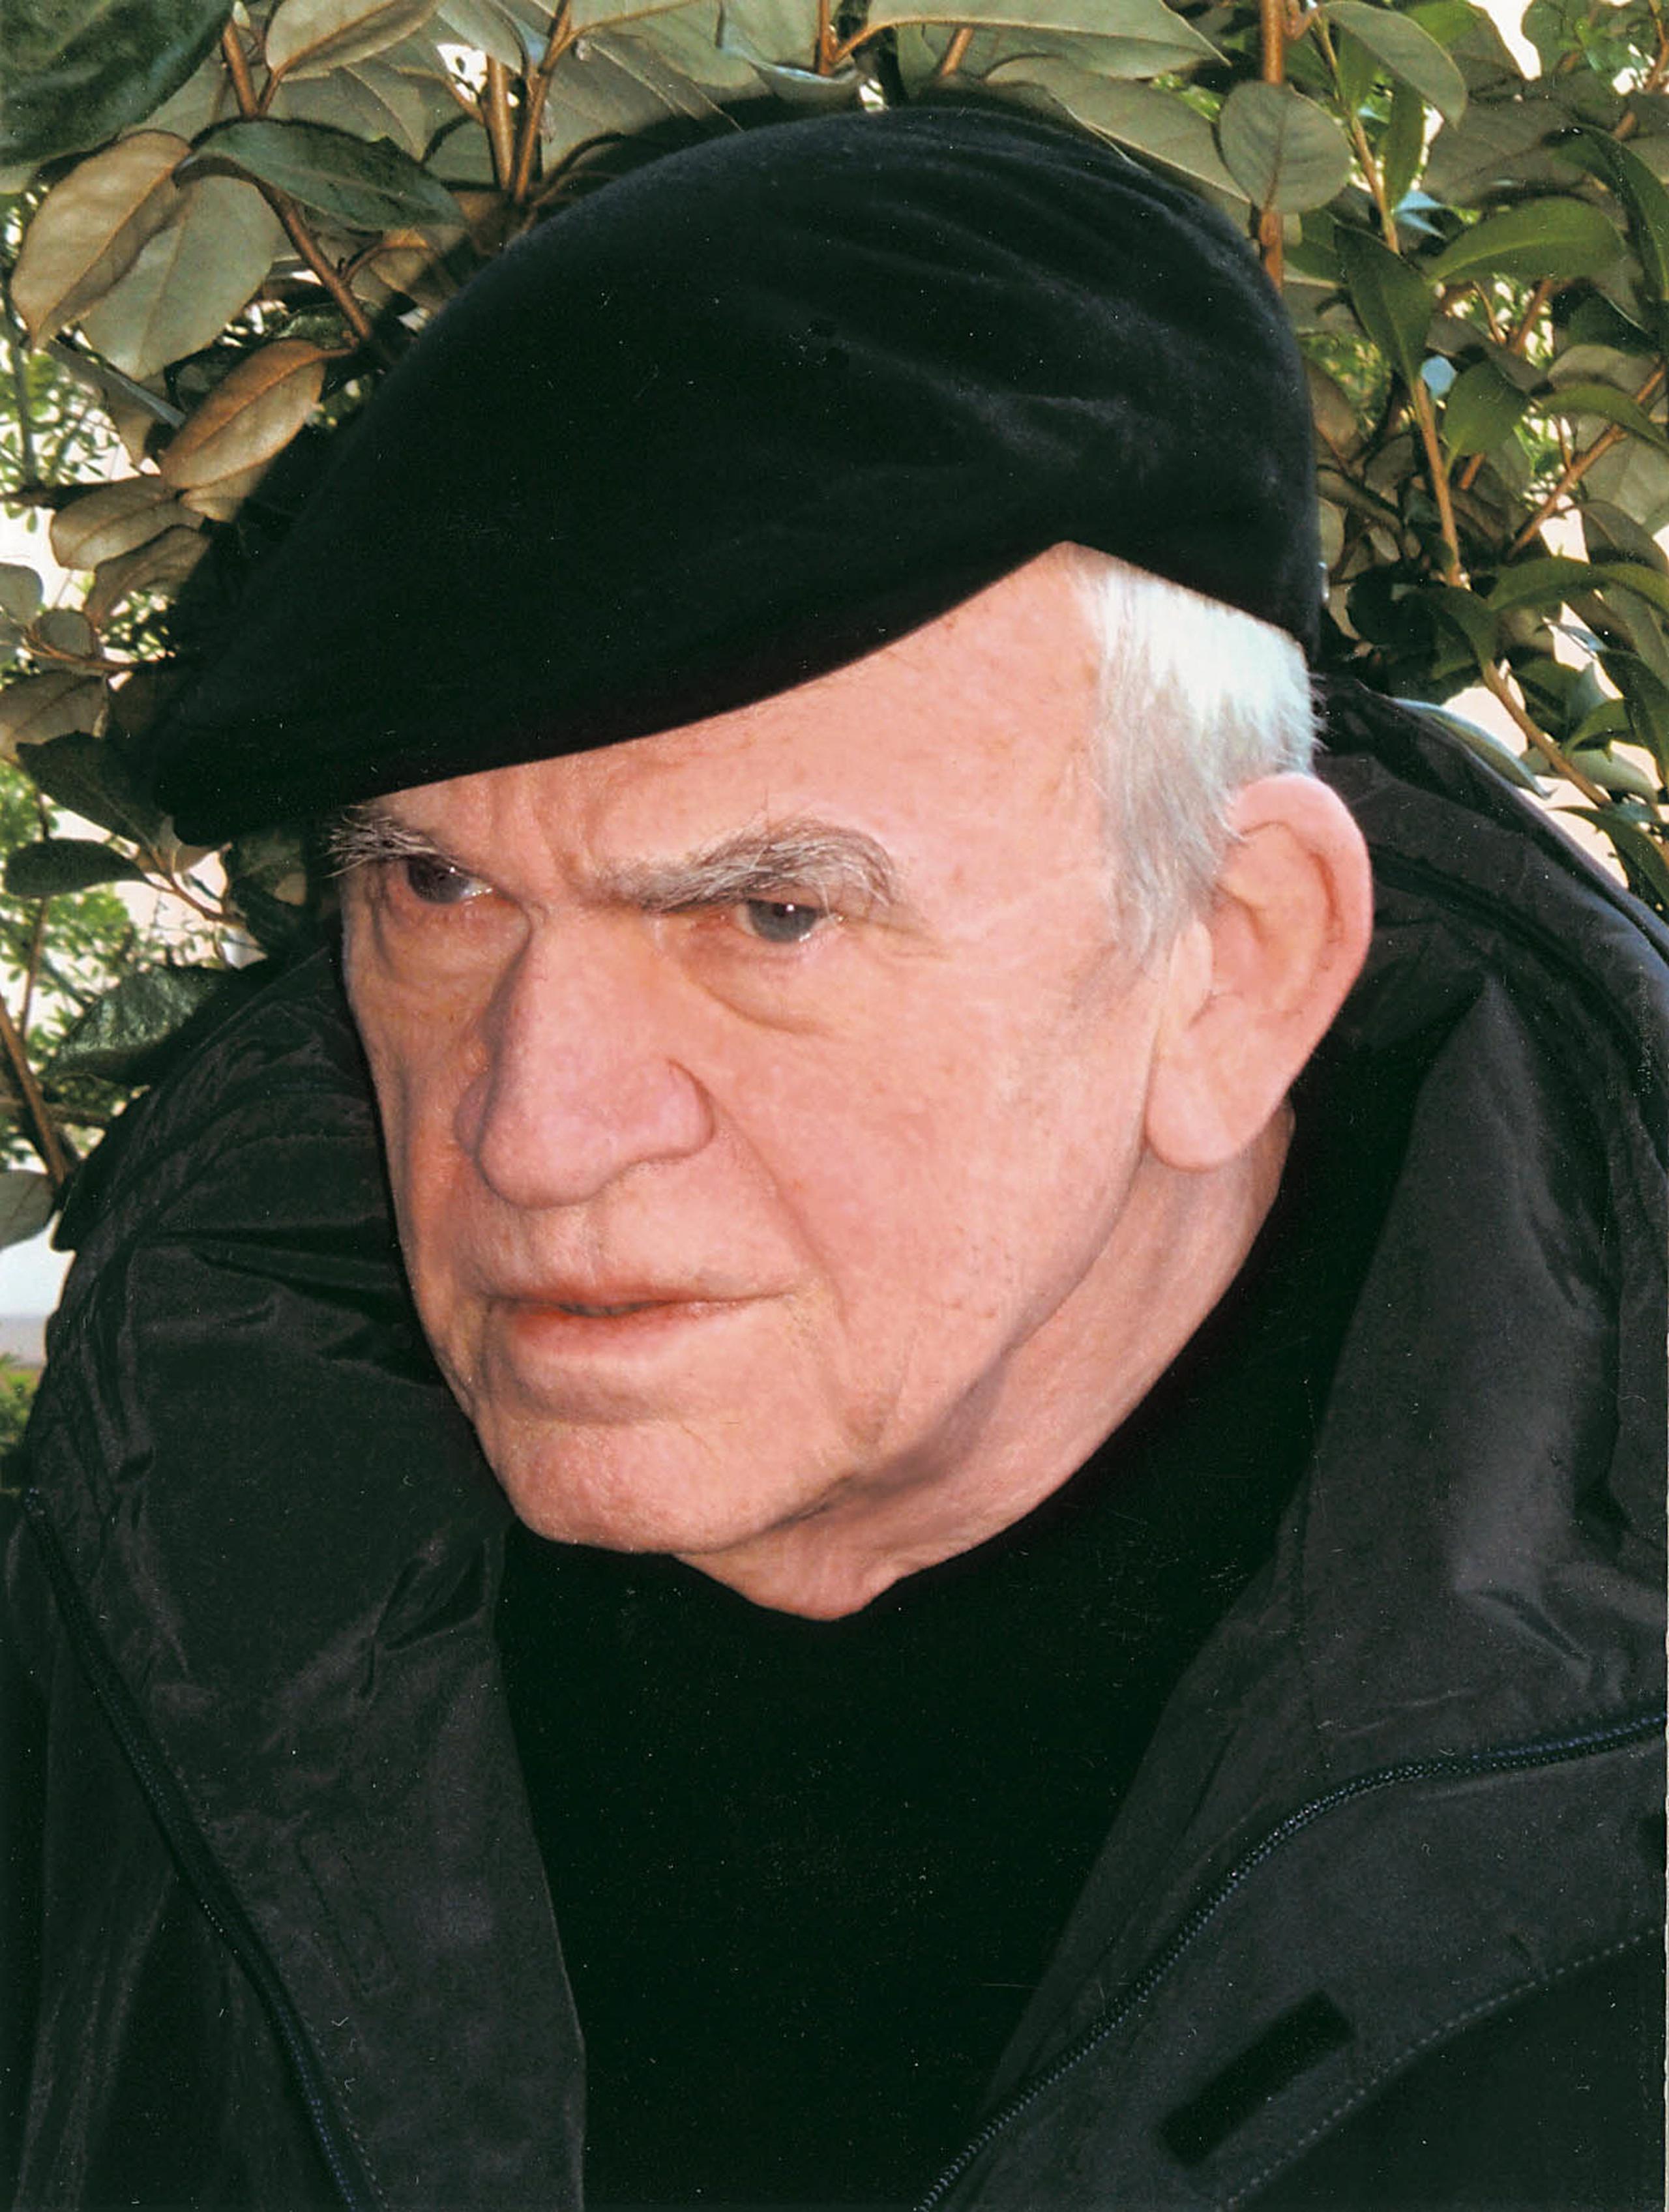 Imagen de 2005 del escritor checo Milan Kundera.